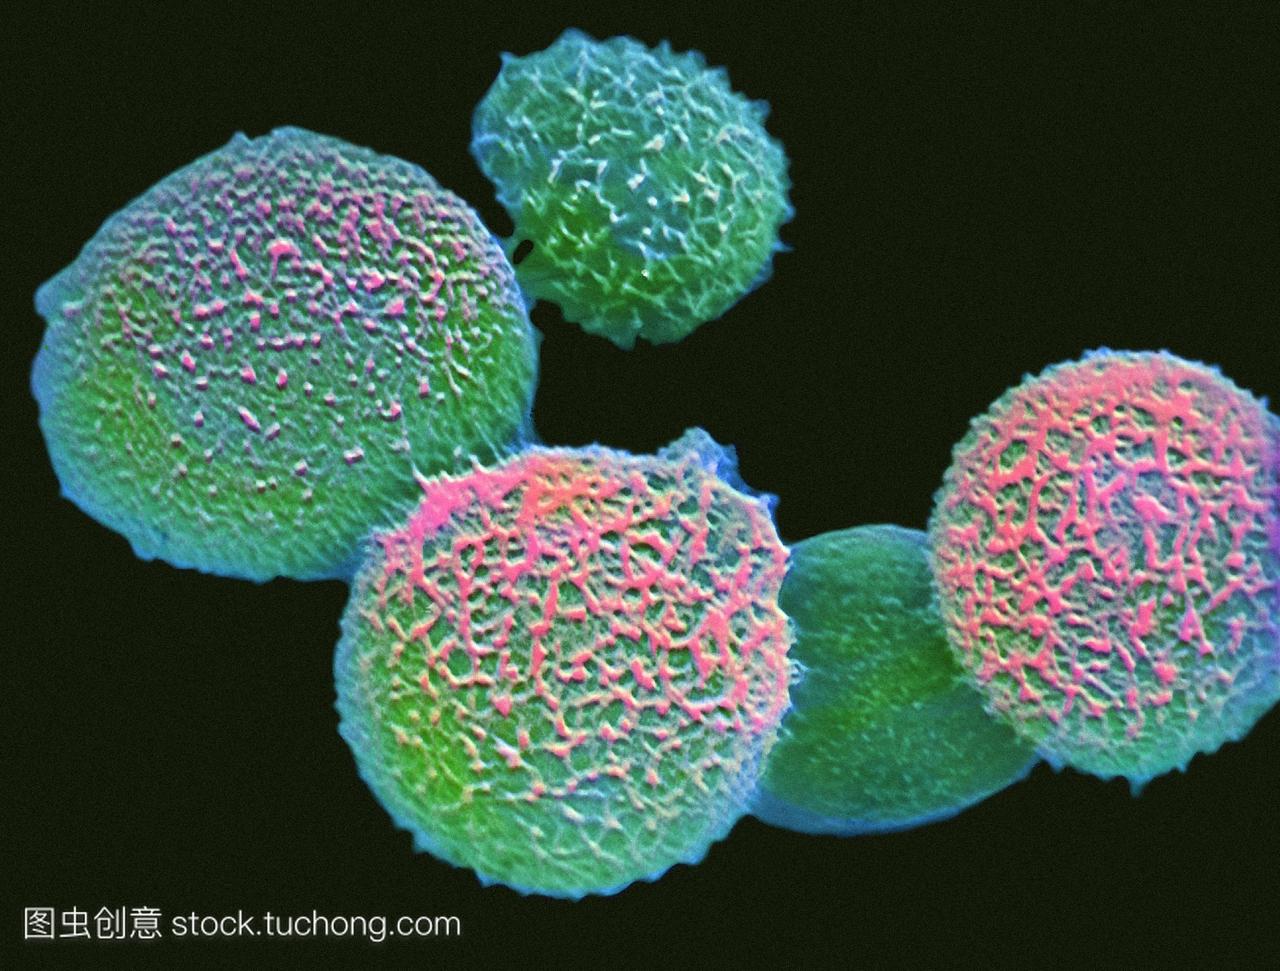 新型隐球菌。新隐球菌真菌细胞的彩色扫描选择